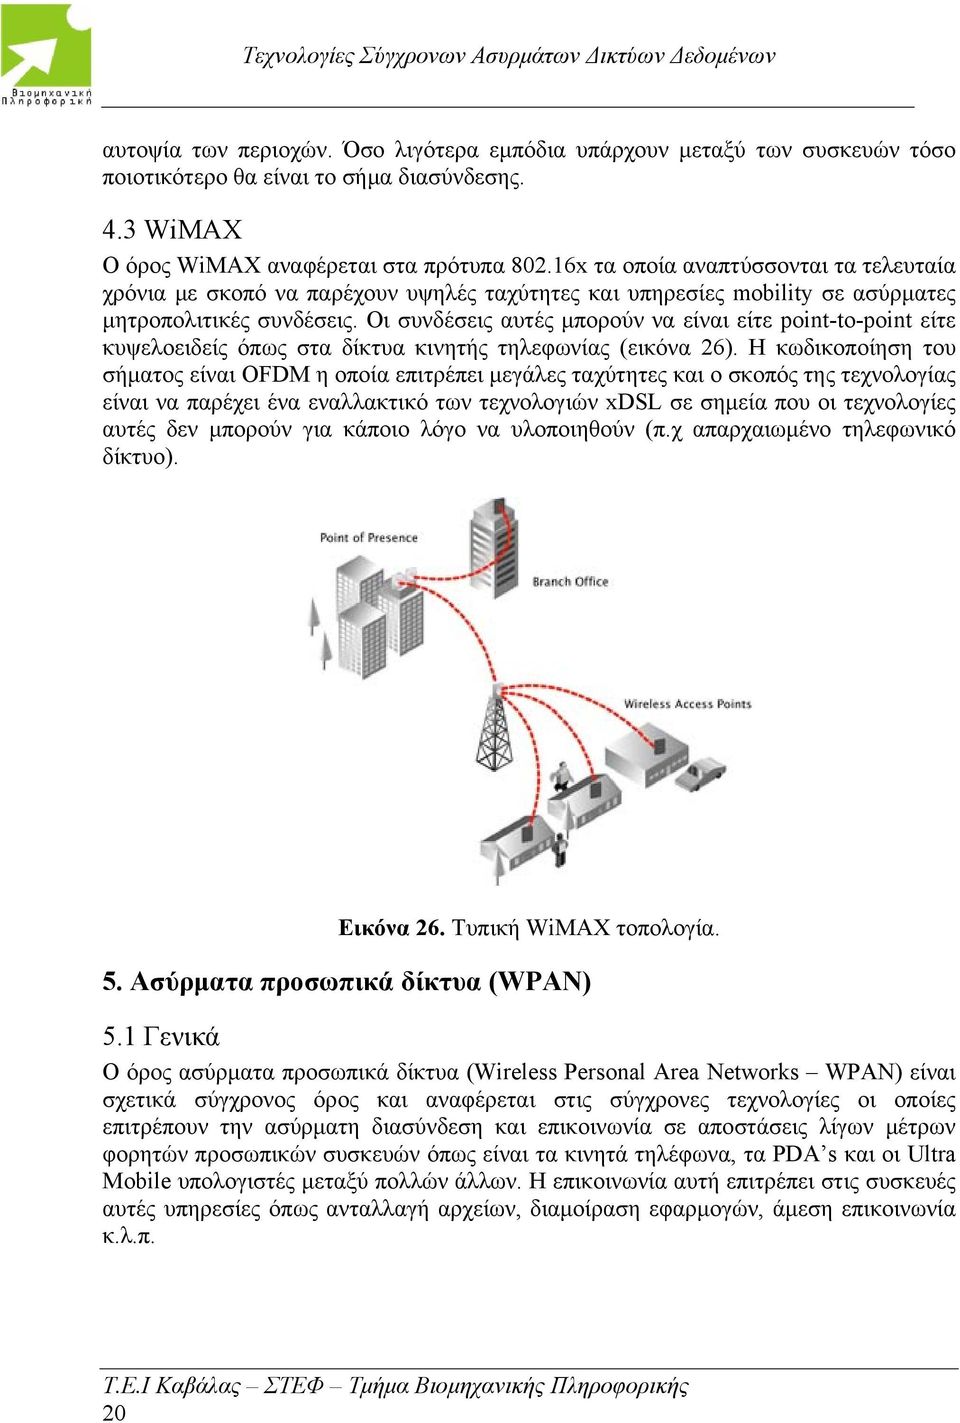 Οι συνδέσεις αυτές μπορούν να είναι είτε point-to-point είτε κυψελοειδείς όπως στα δίκτυα κινητής τηλεφωνίας (εικόνα 26).